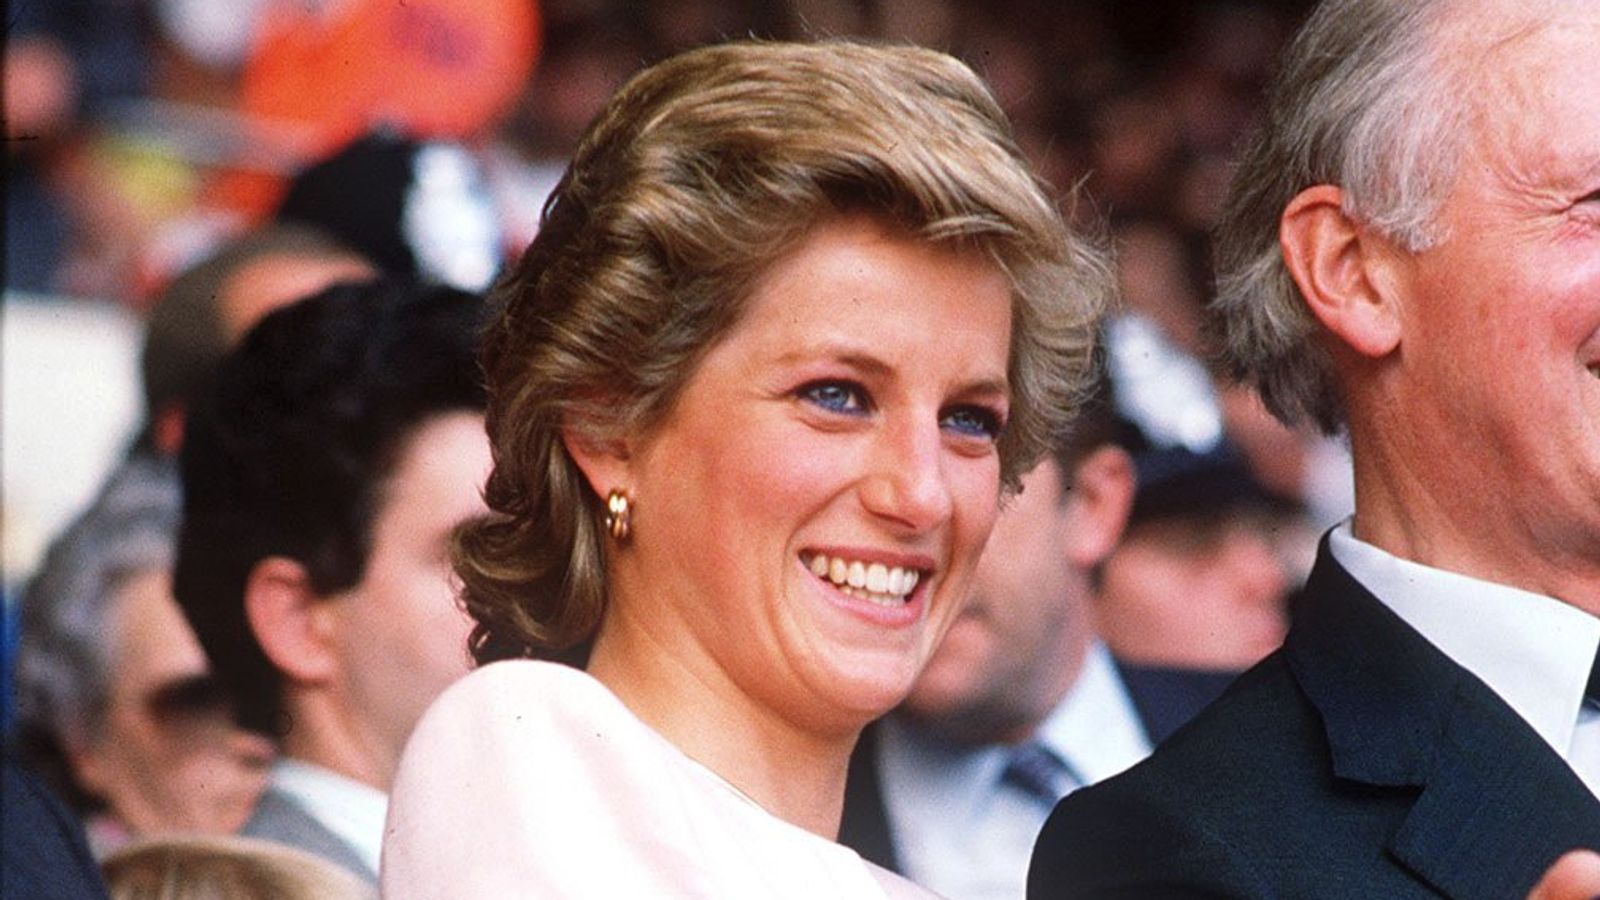 Princess Diana's engagement portrait blouse could fetch £79,000